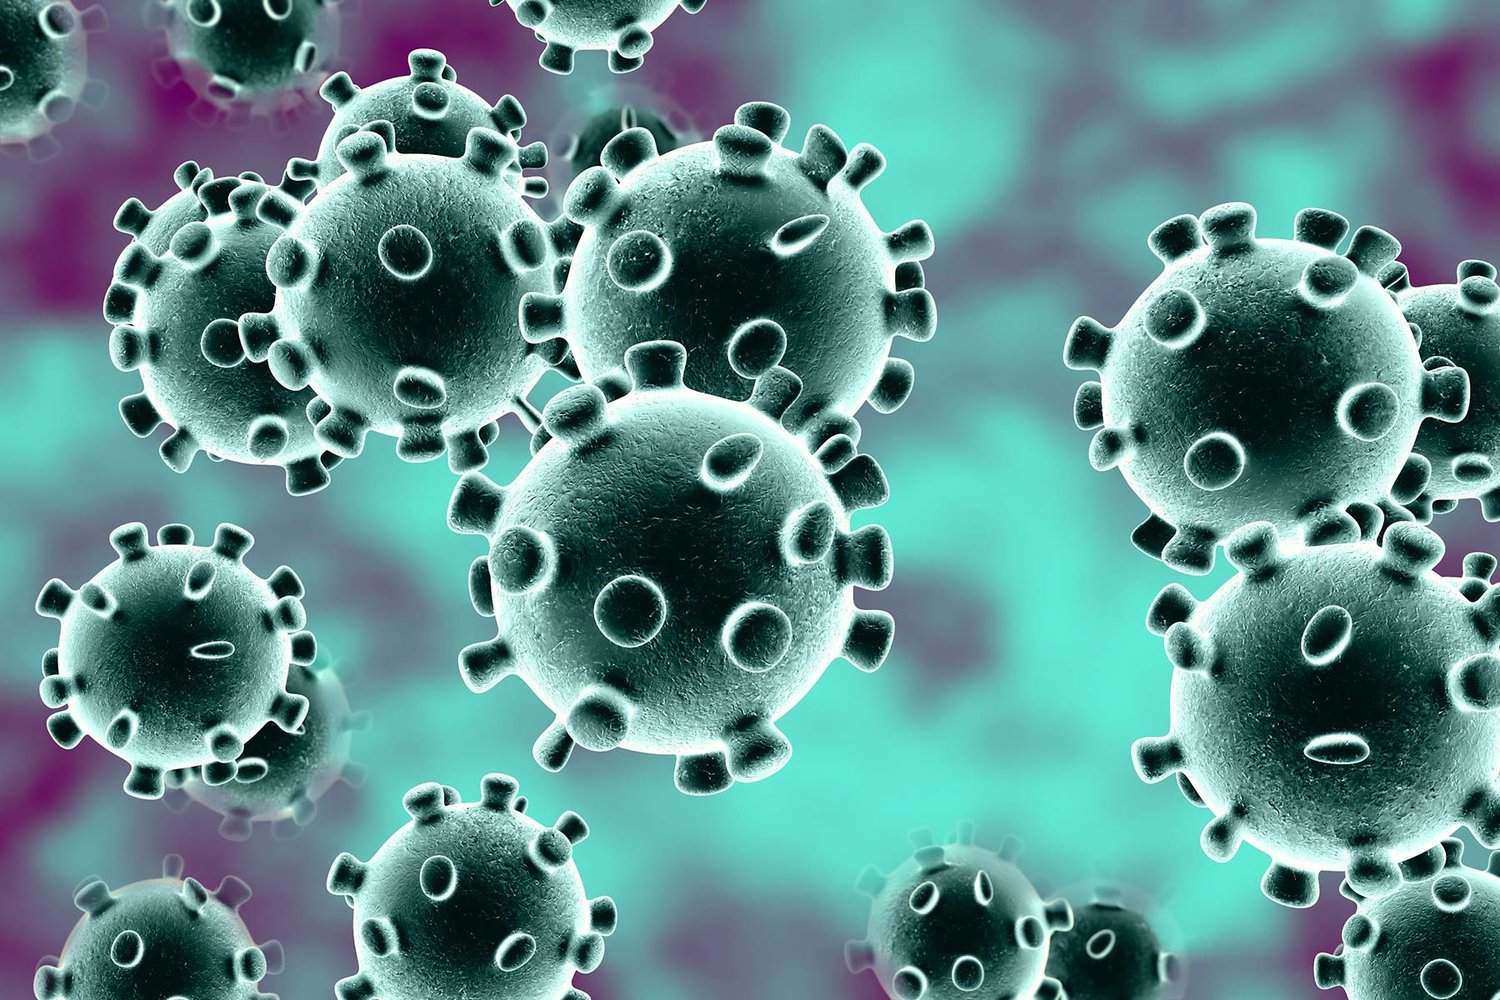 Ministério da Saúde registra 12 novas mortes por coronavírus no país